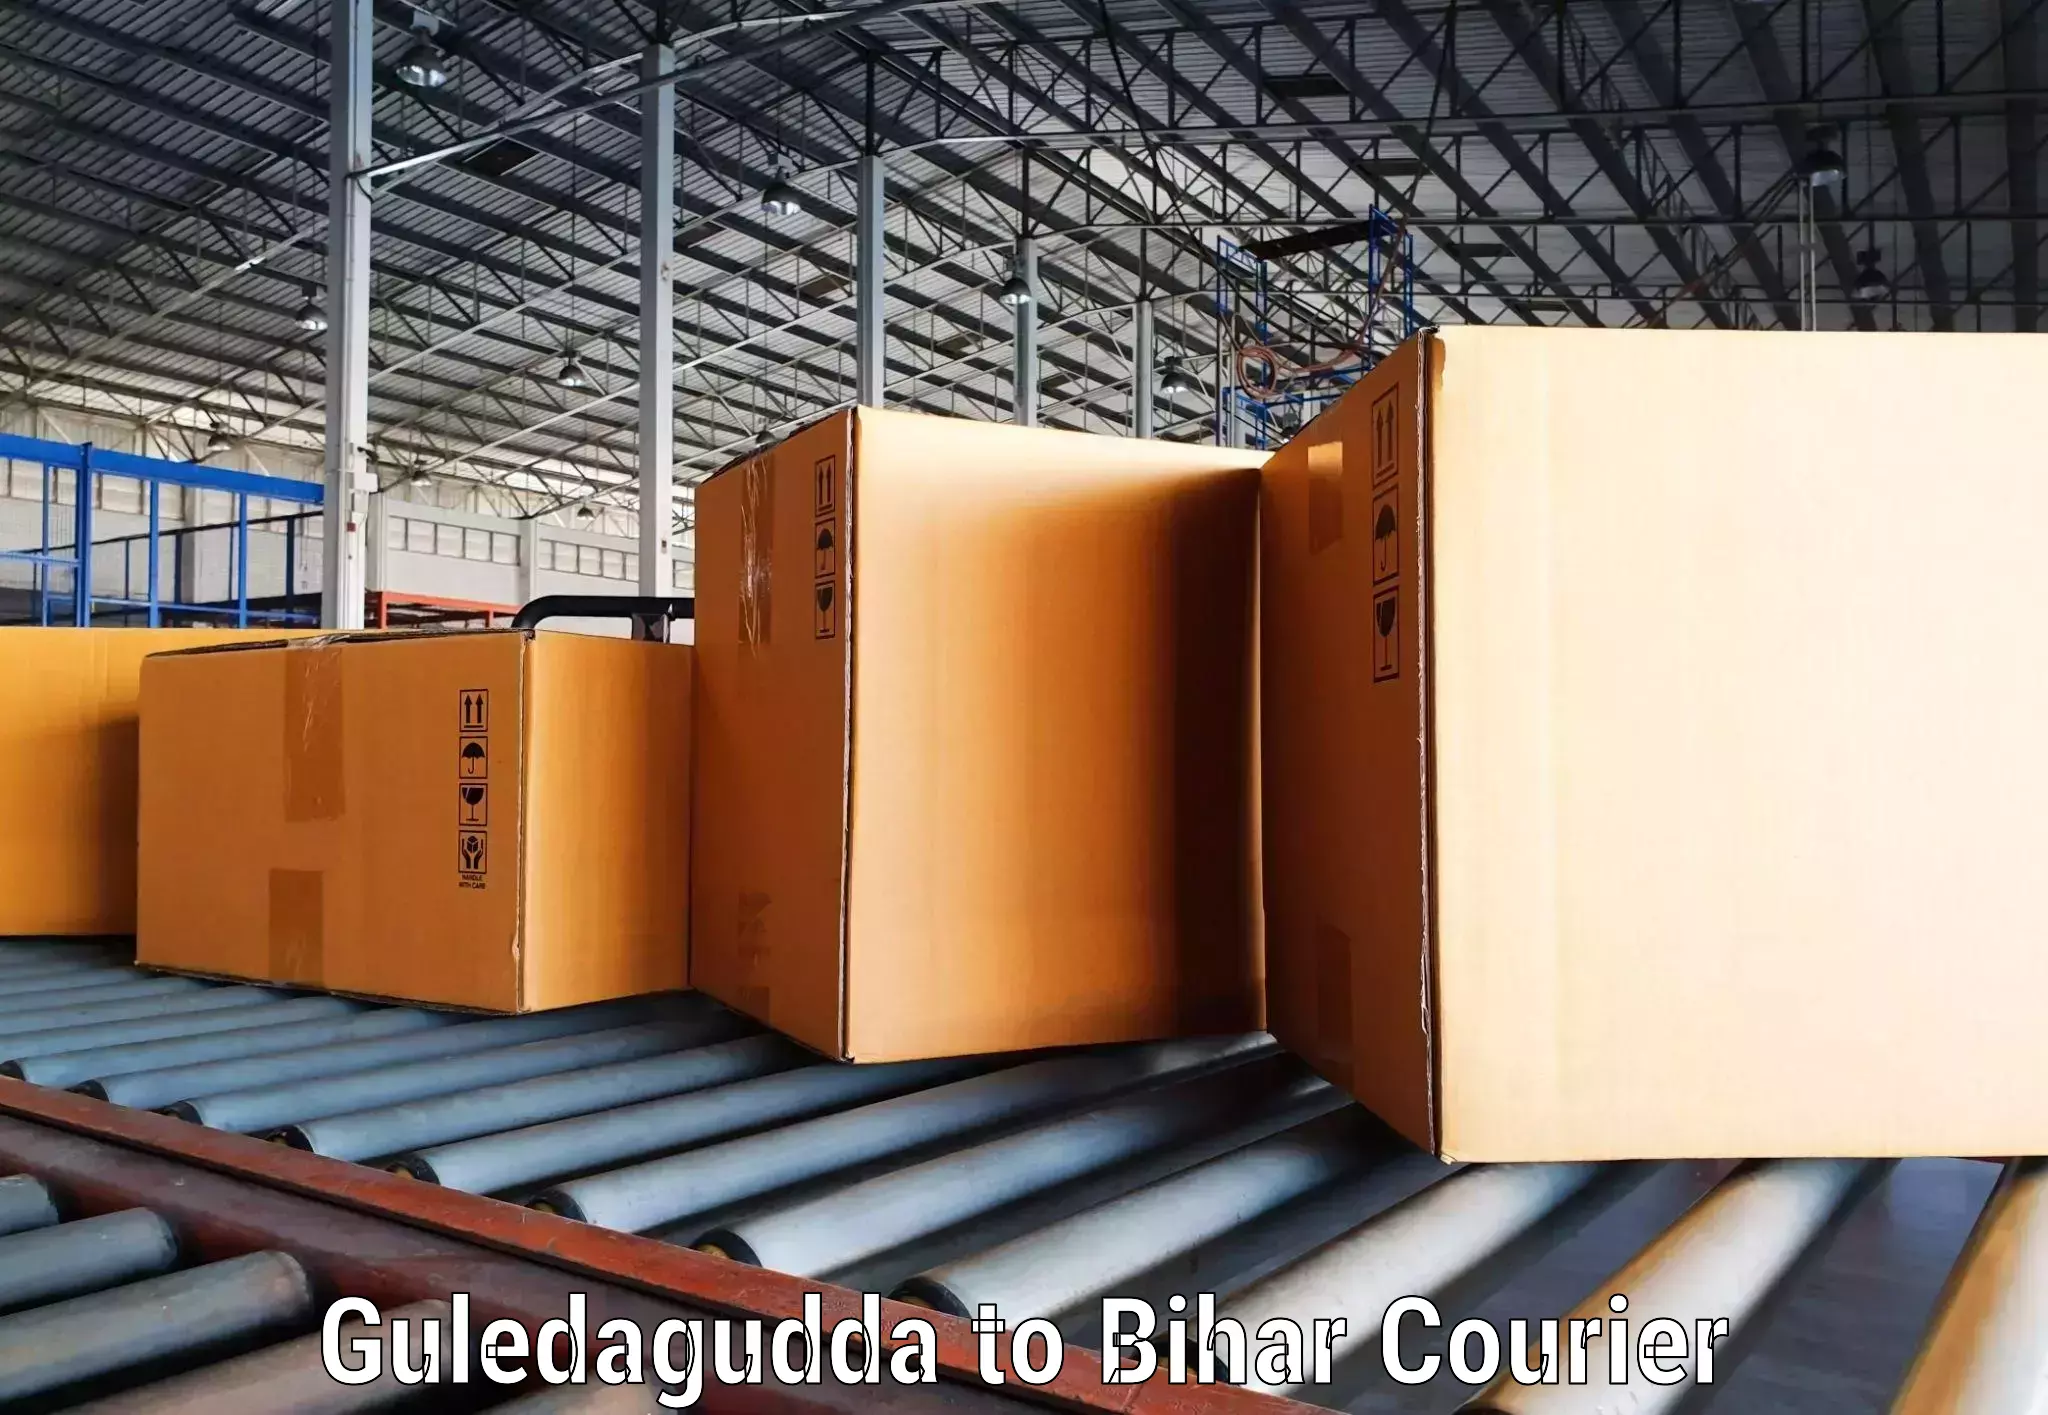 Affordable parcel service Guledagudda to Sultanganj